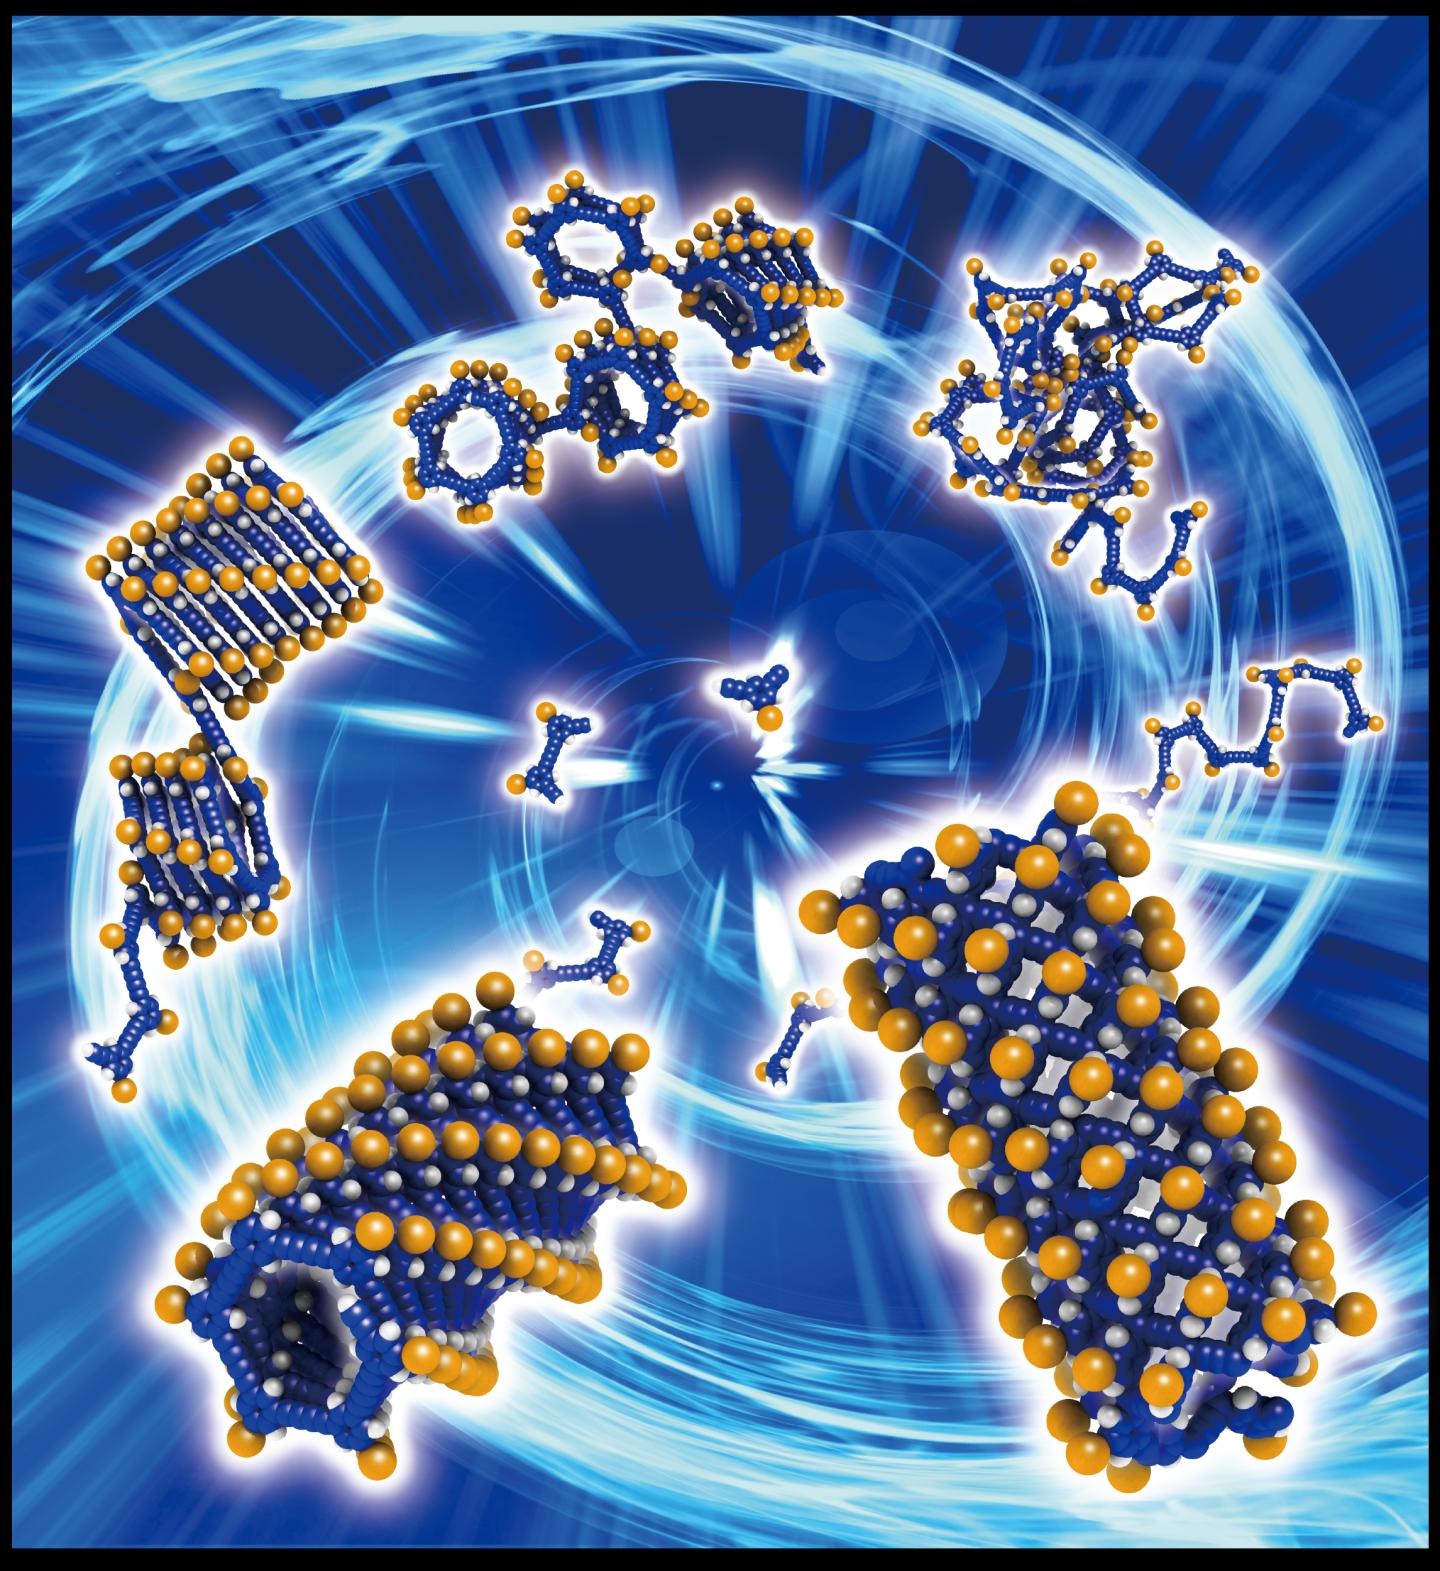 Synthesis of Organic Nanotubes